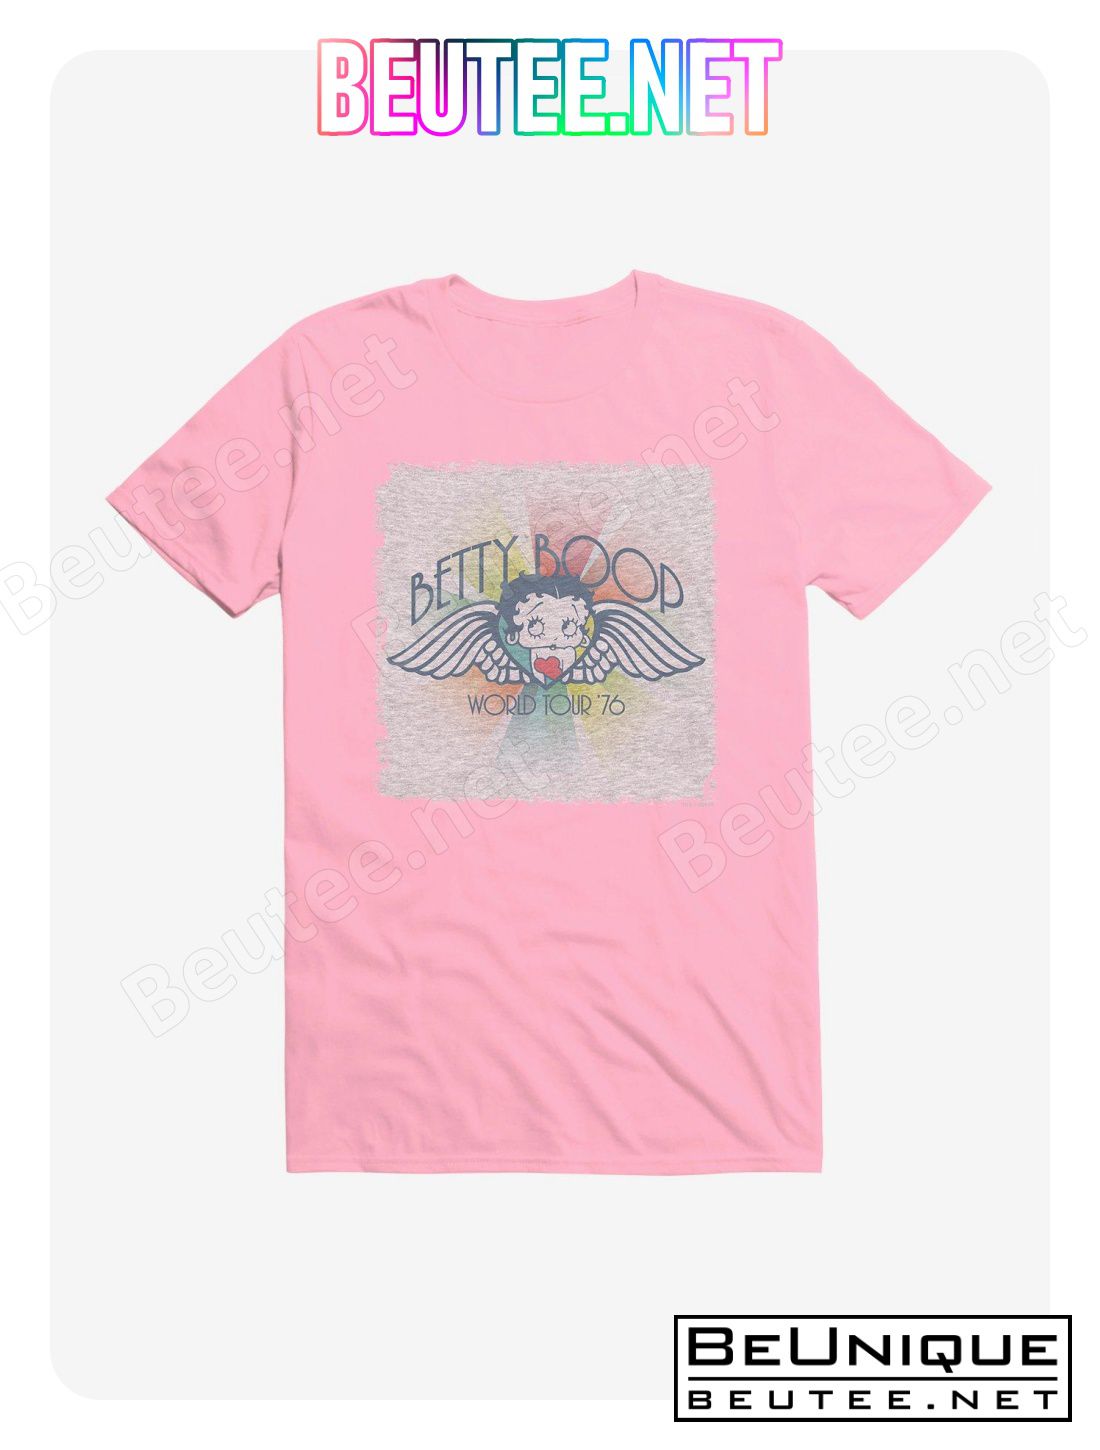 Betty Boop World Tour '76 T-Shirt